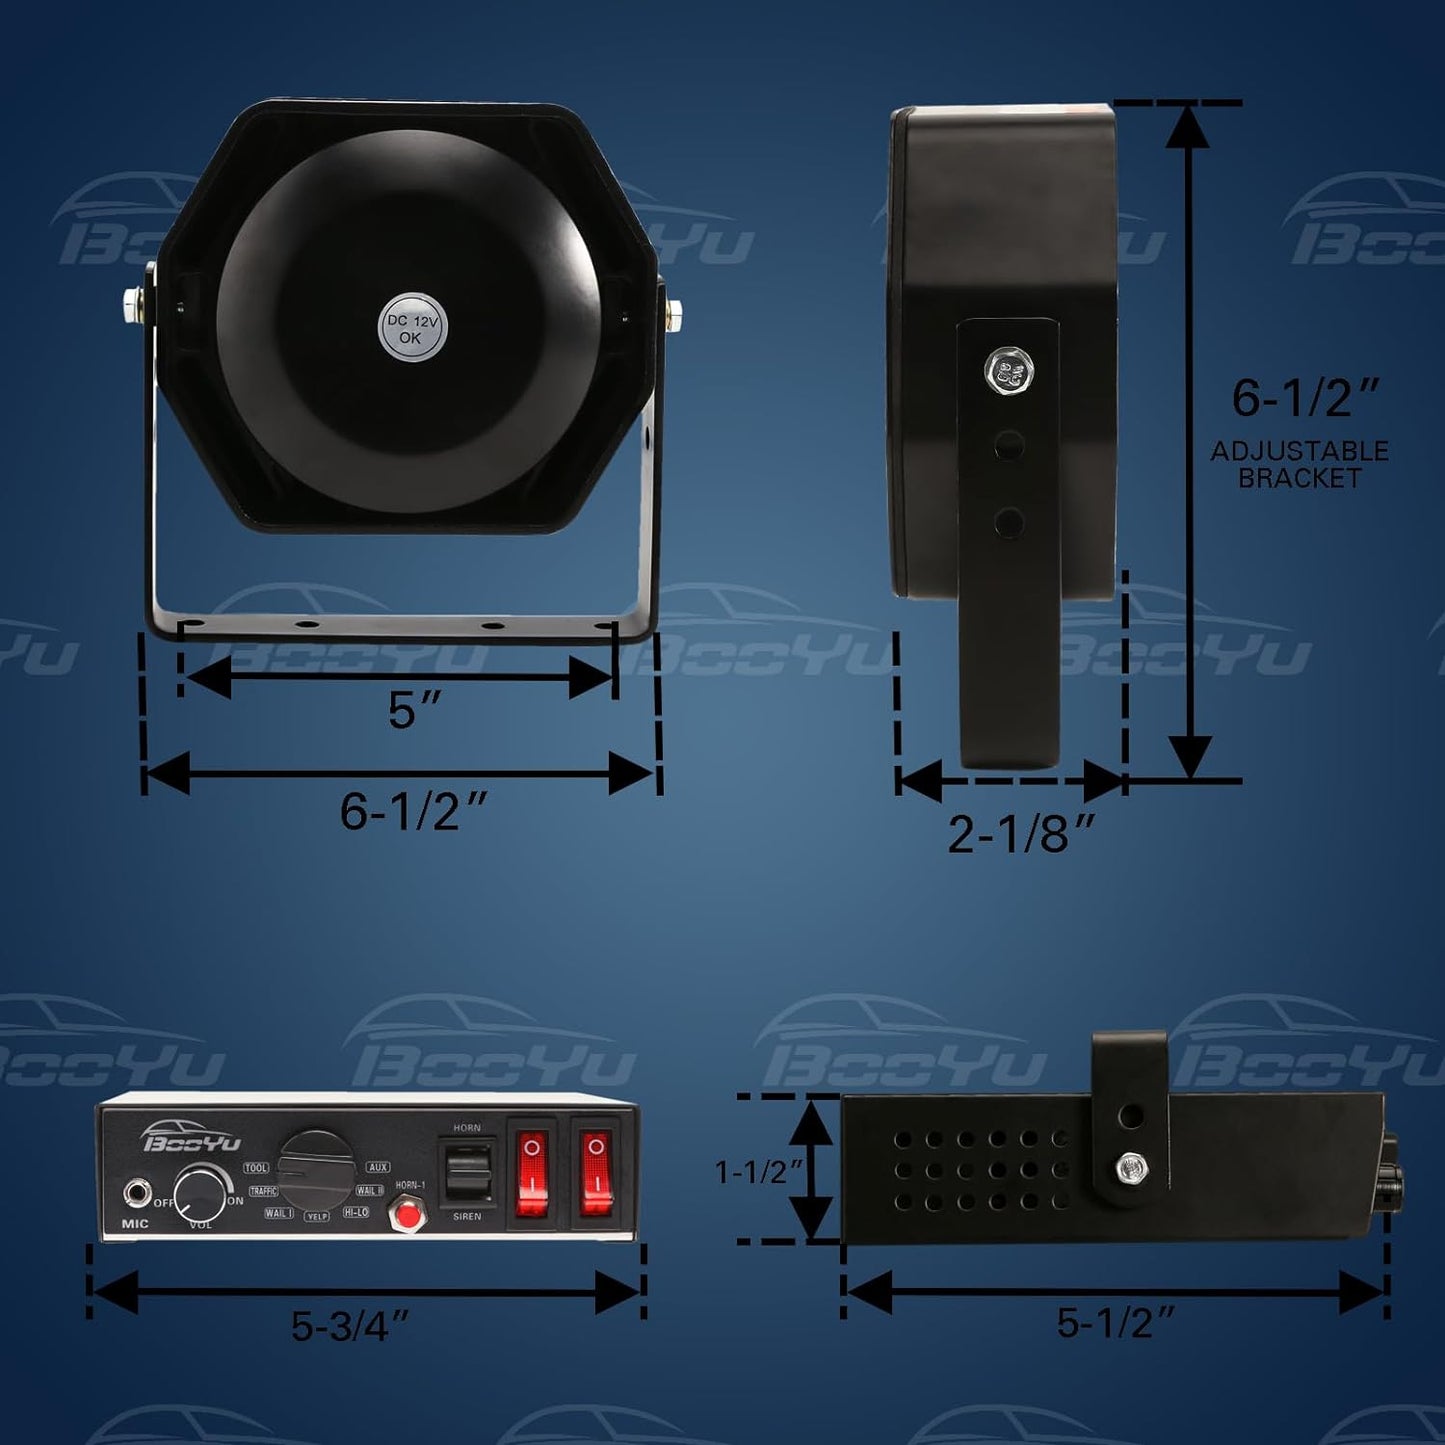 9 Tone 12V 200W Warning Emergency Siren PA System [Slim Speaker}